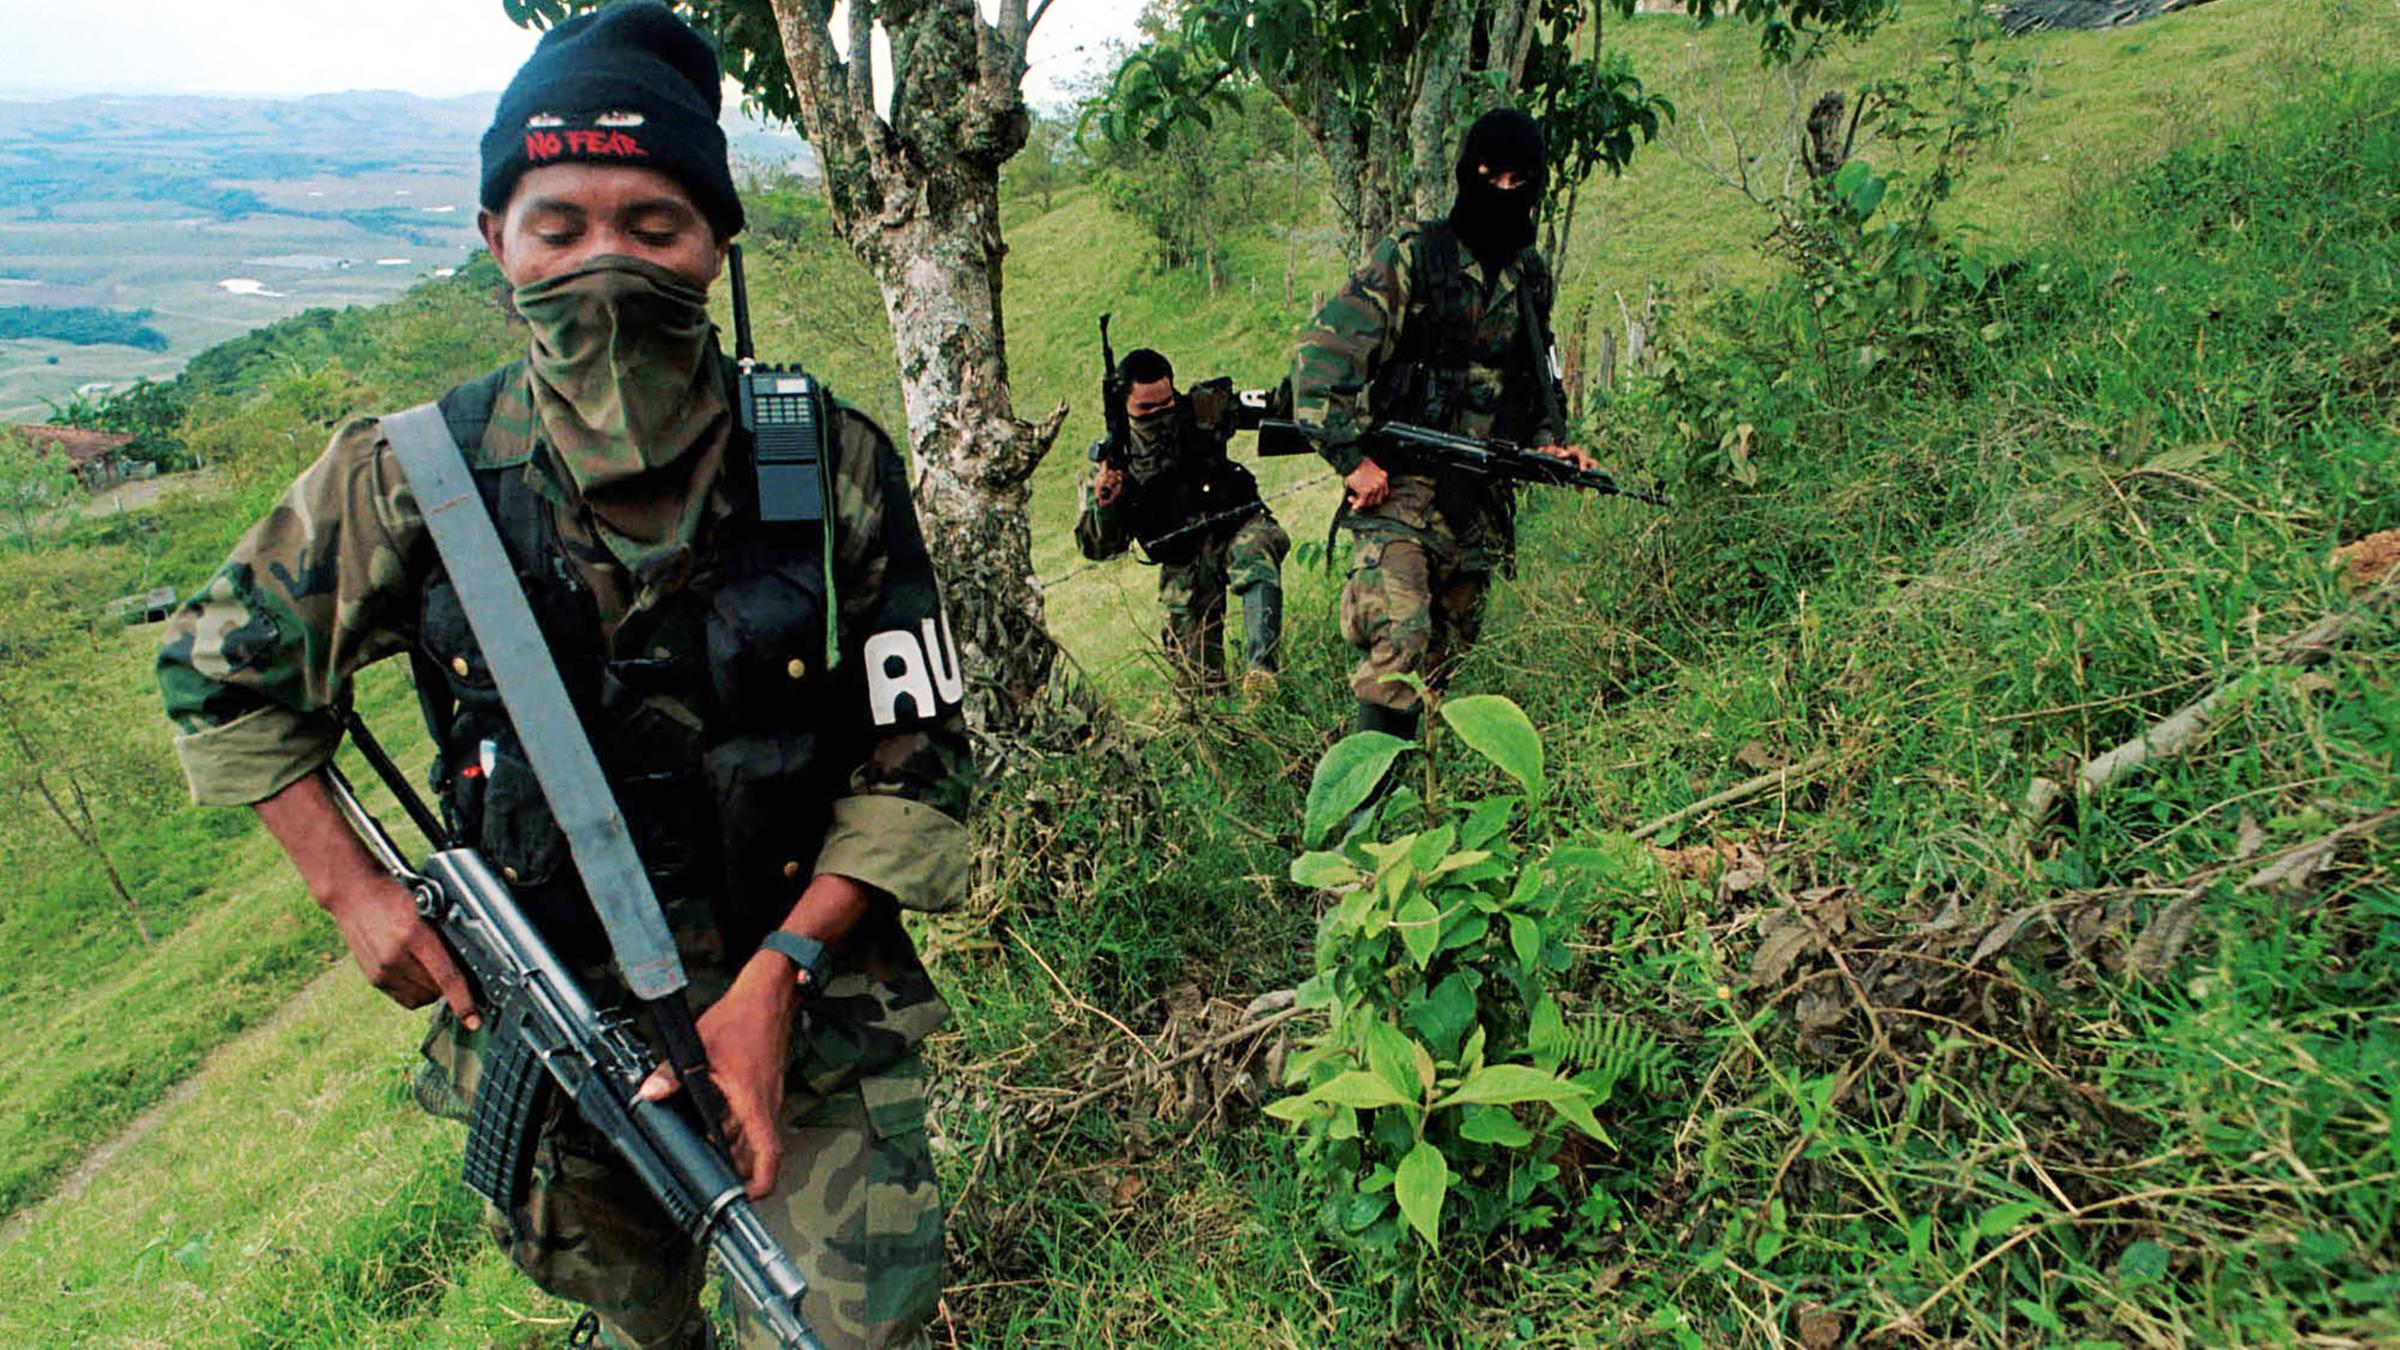 Archiv: Paramilitaerische Truppen in Kolumbien